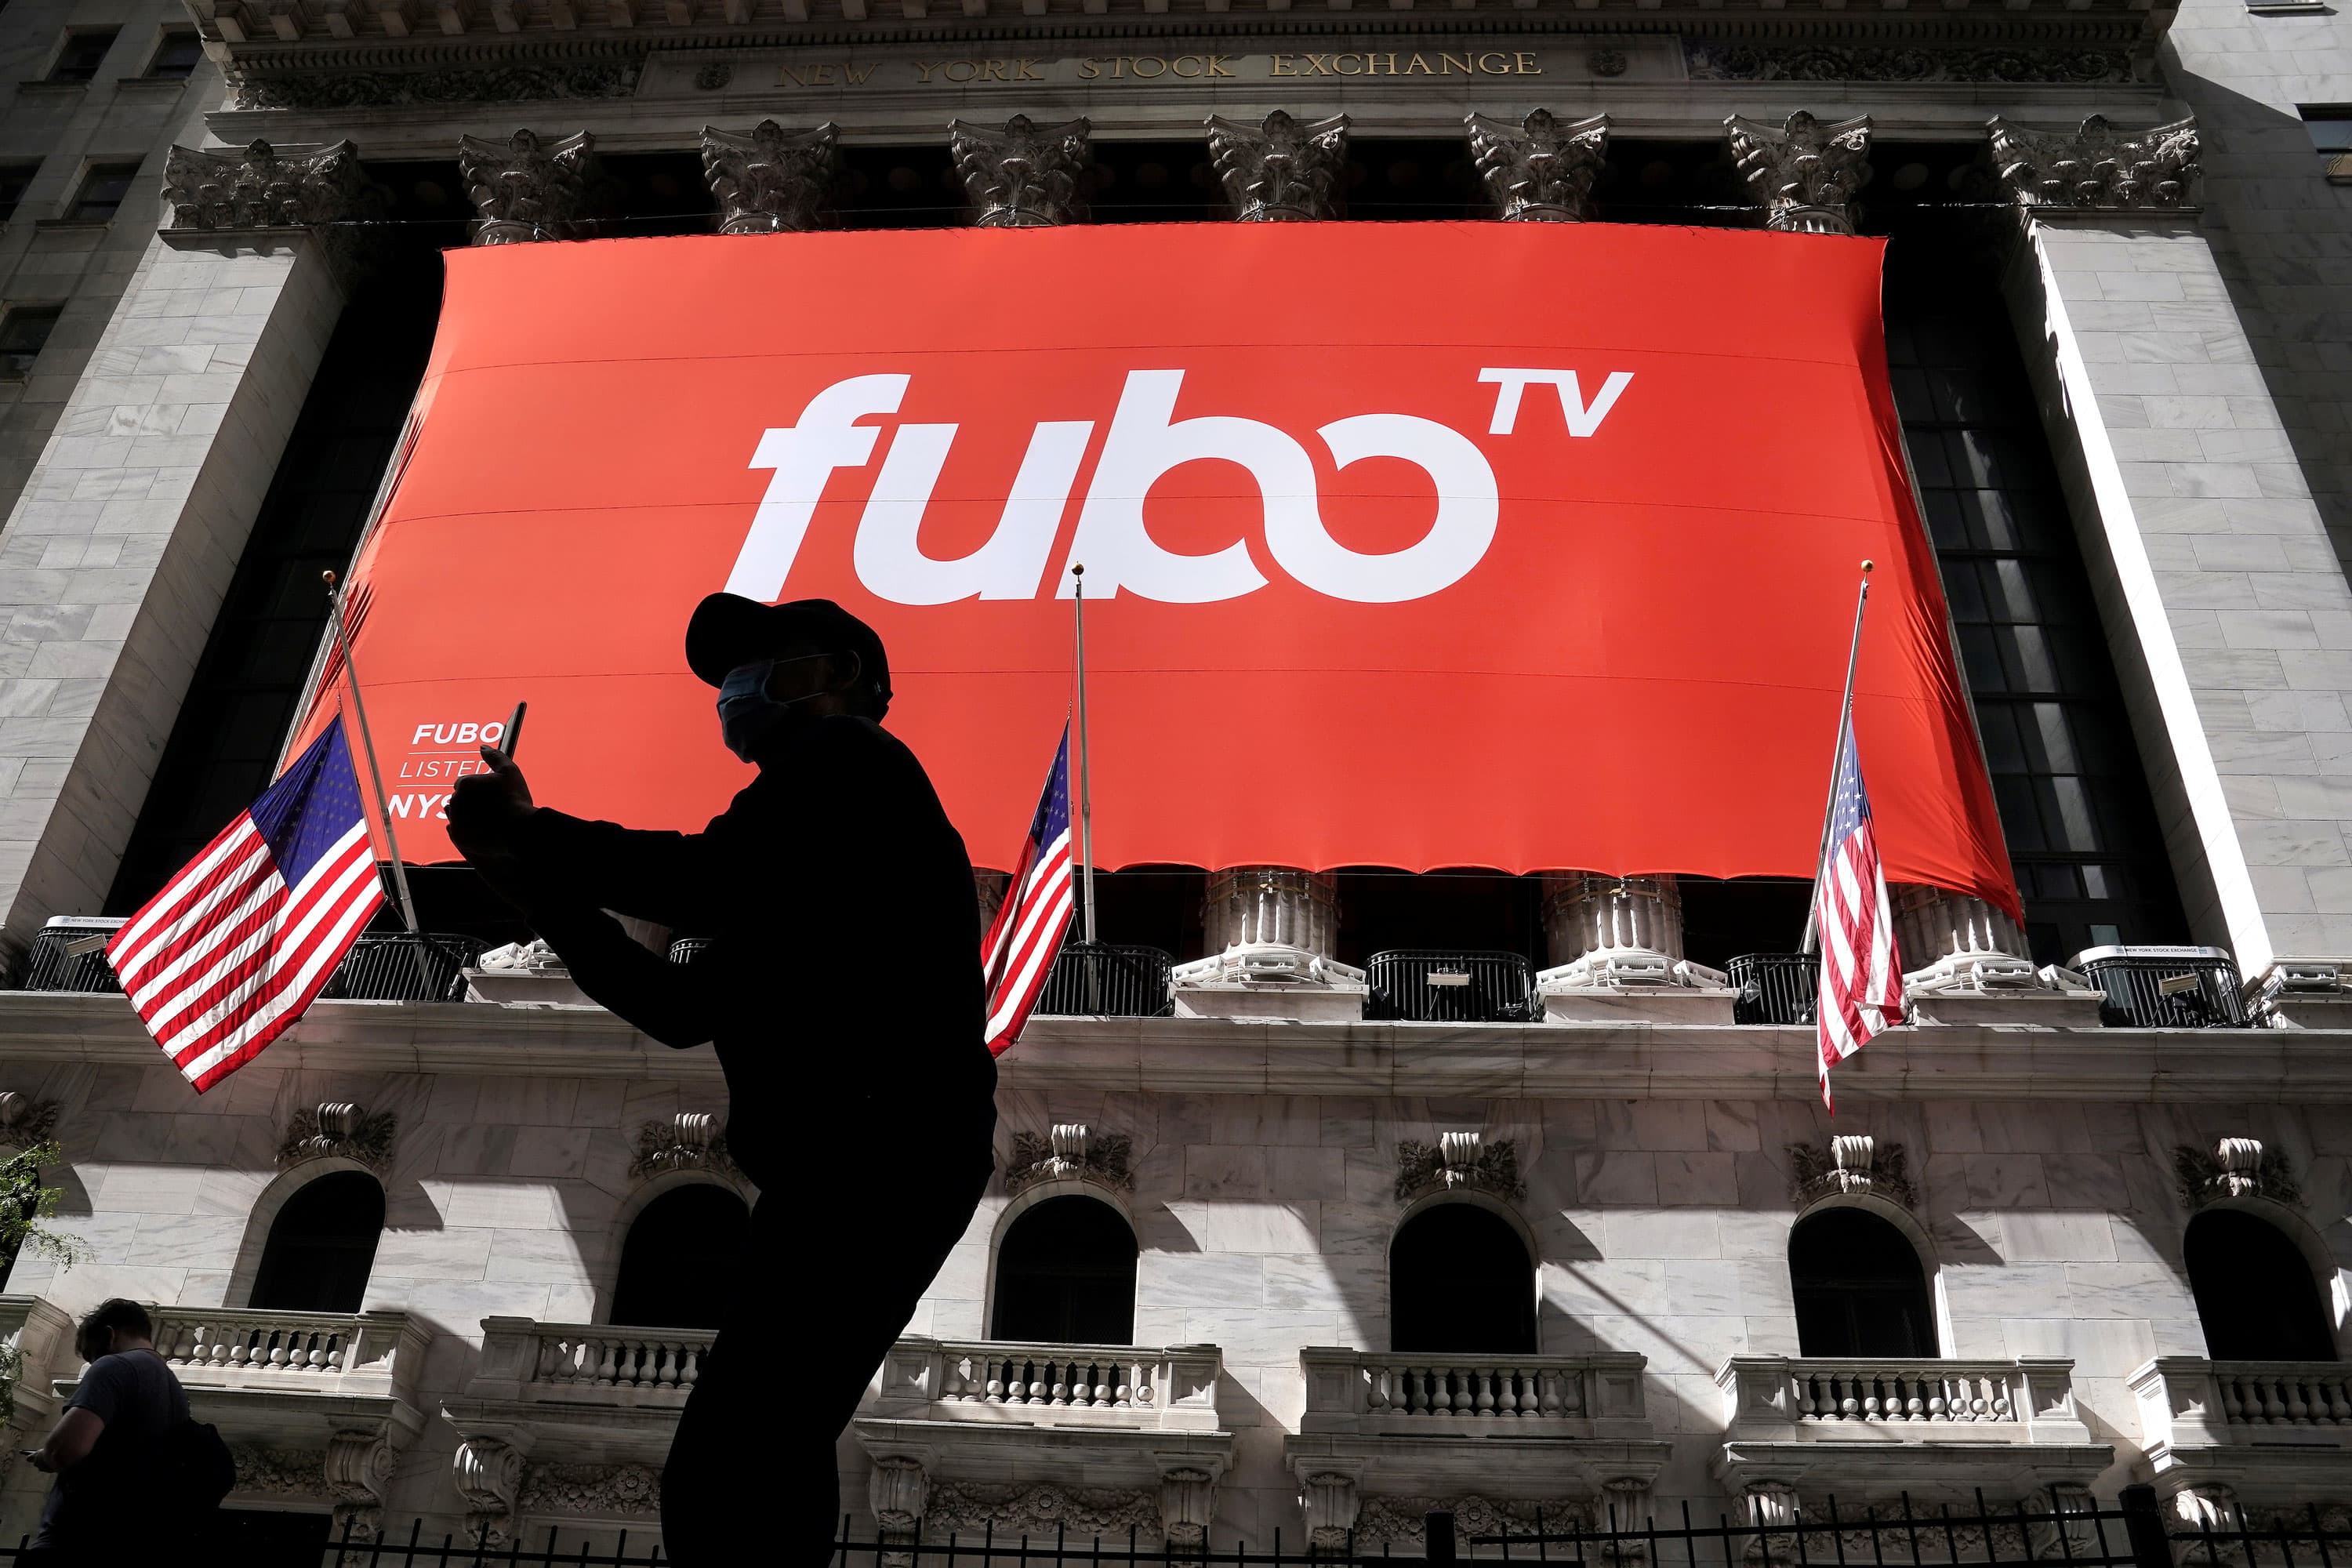 Wedbush actualitza fuboTV per superar el rendiment citant un 